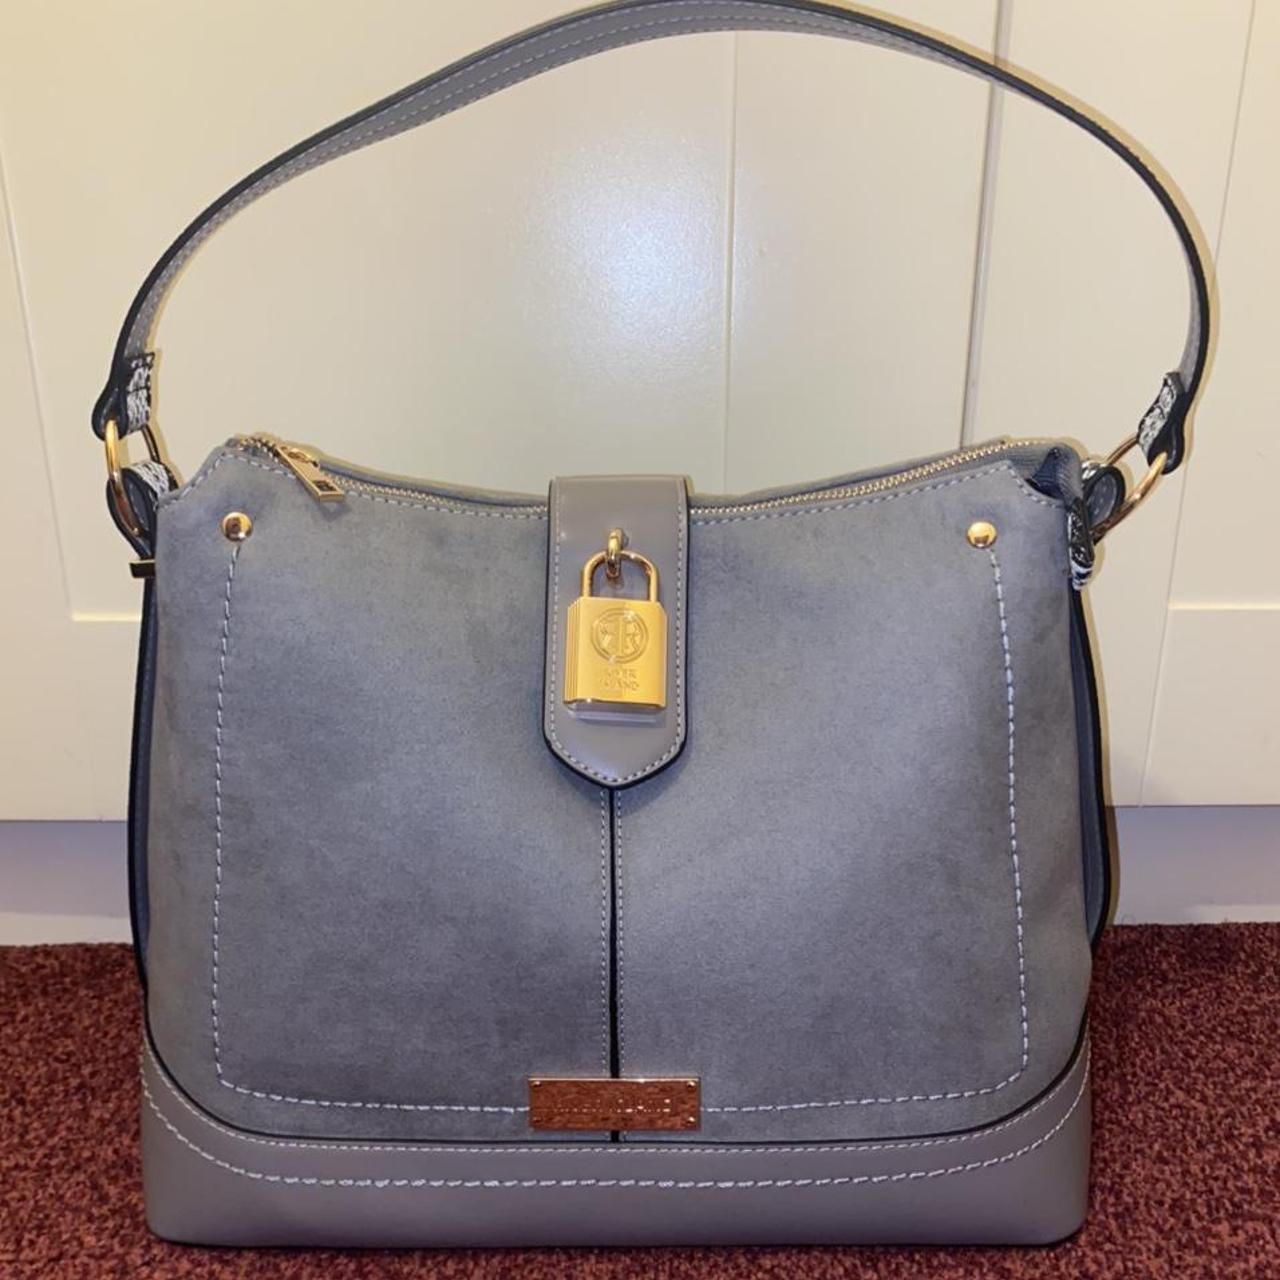 ARURA (LABEL) Women's Handbag Fashion Satchel Purses Top Handle Tote Bag  Shoulder Bag (Black) : Amazon.in: Shoes & Handbags